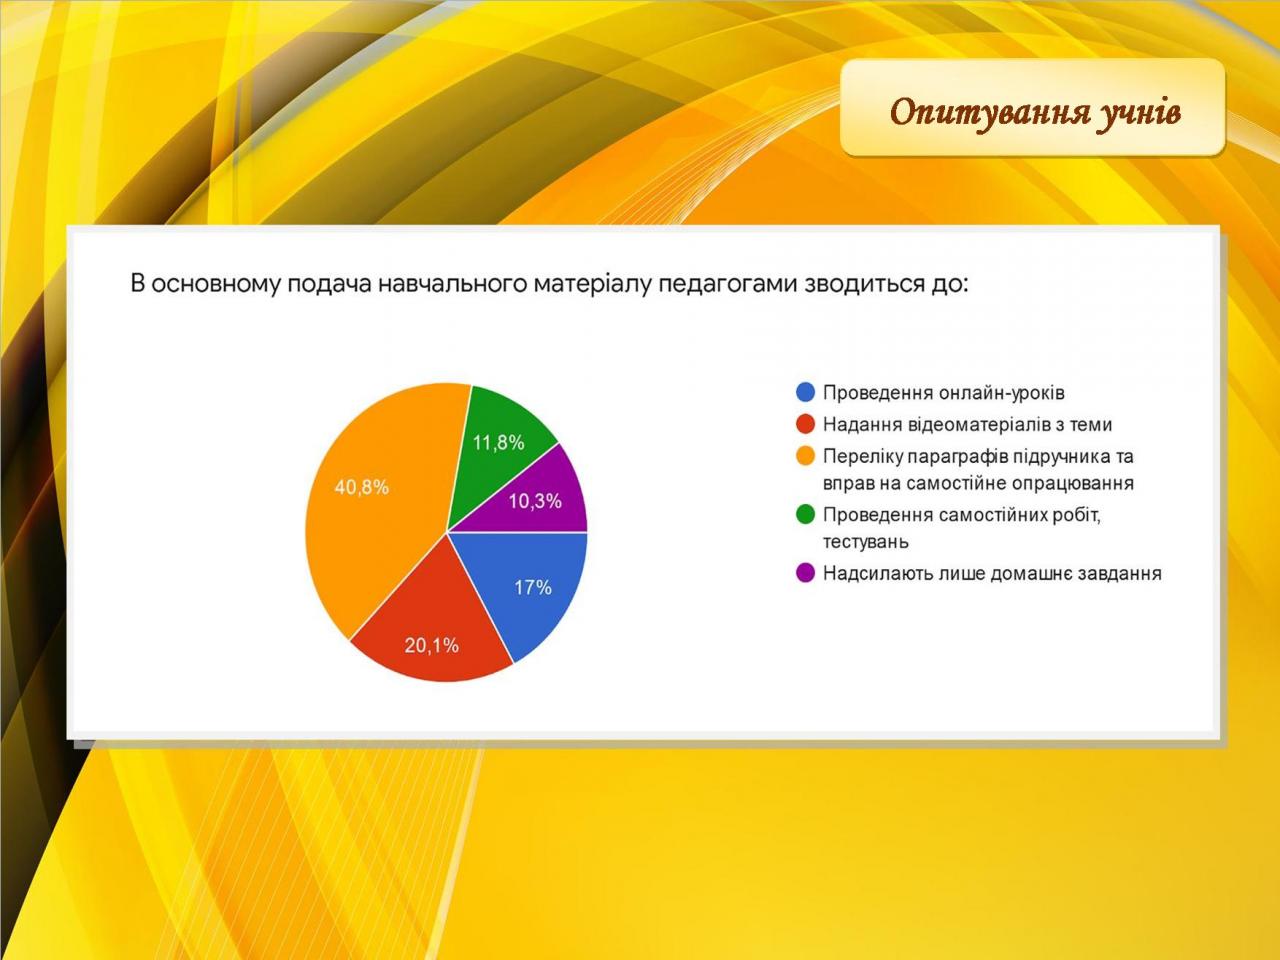 http://dunrada.gov.ua/uploadfile/archive_news/2020/04/17/2020-04-17_3834/images/images-42196.jpg